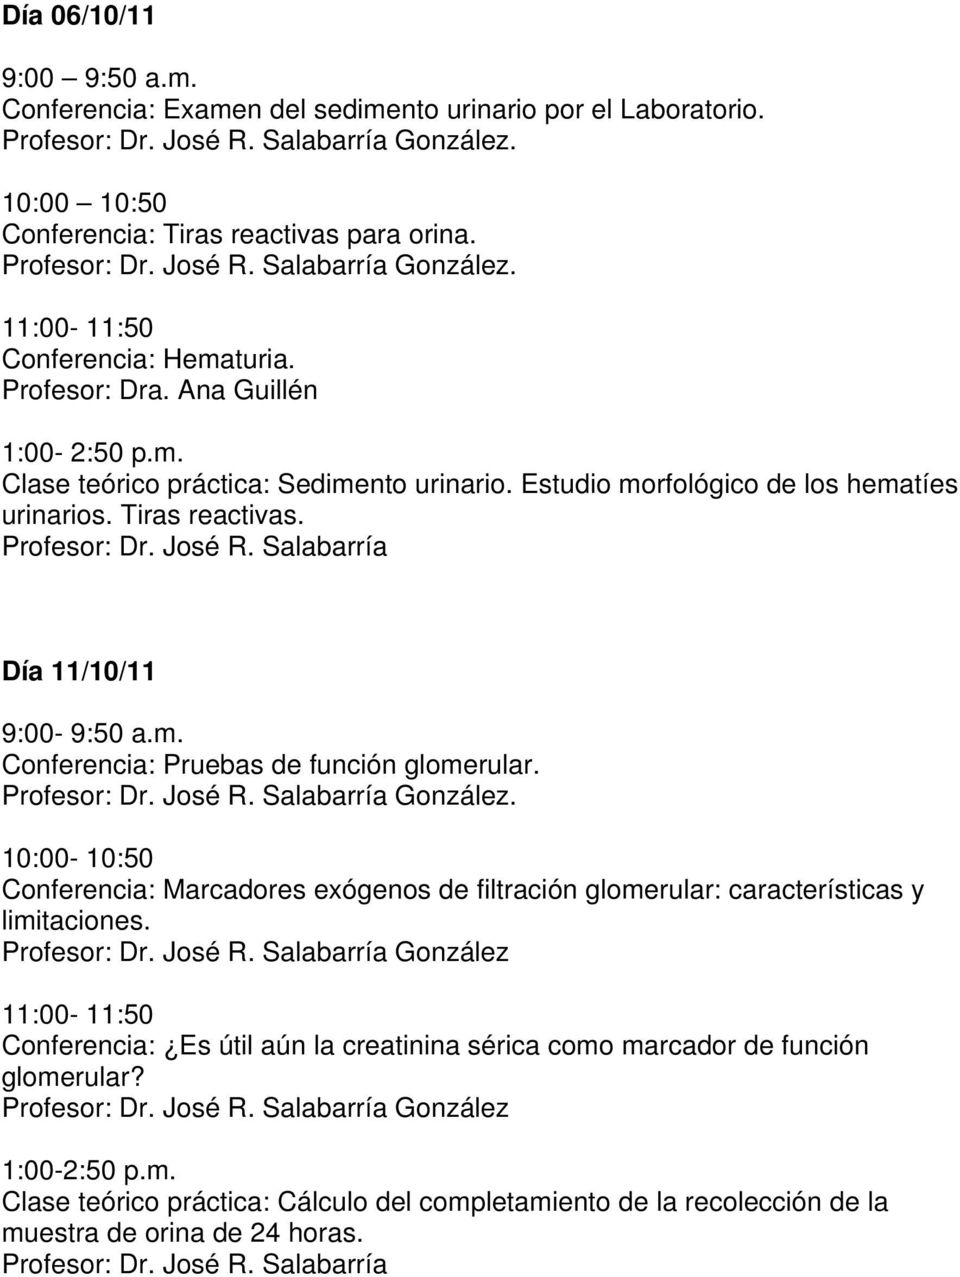 Día 11/10/11 Conferencia: Pruebas de función glomerular. González. Conferencia: Marcadores exógenos de filtración glomerular: características y limitaciones.